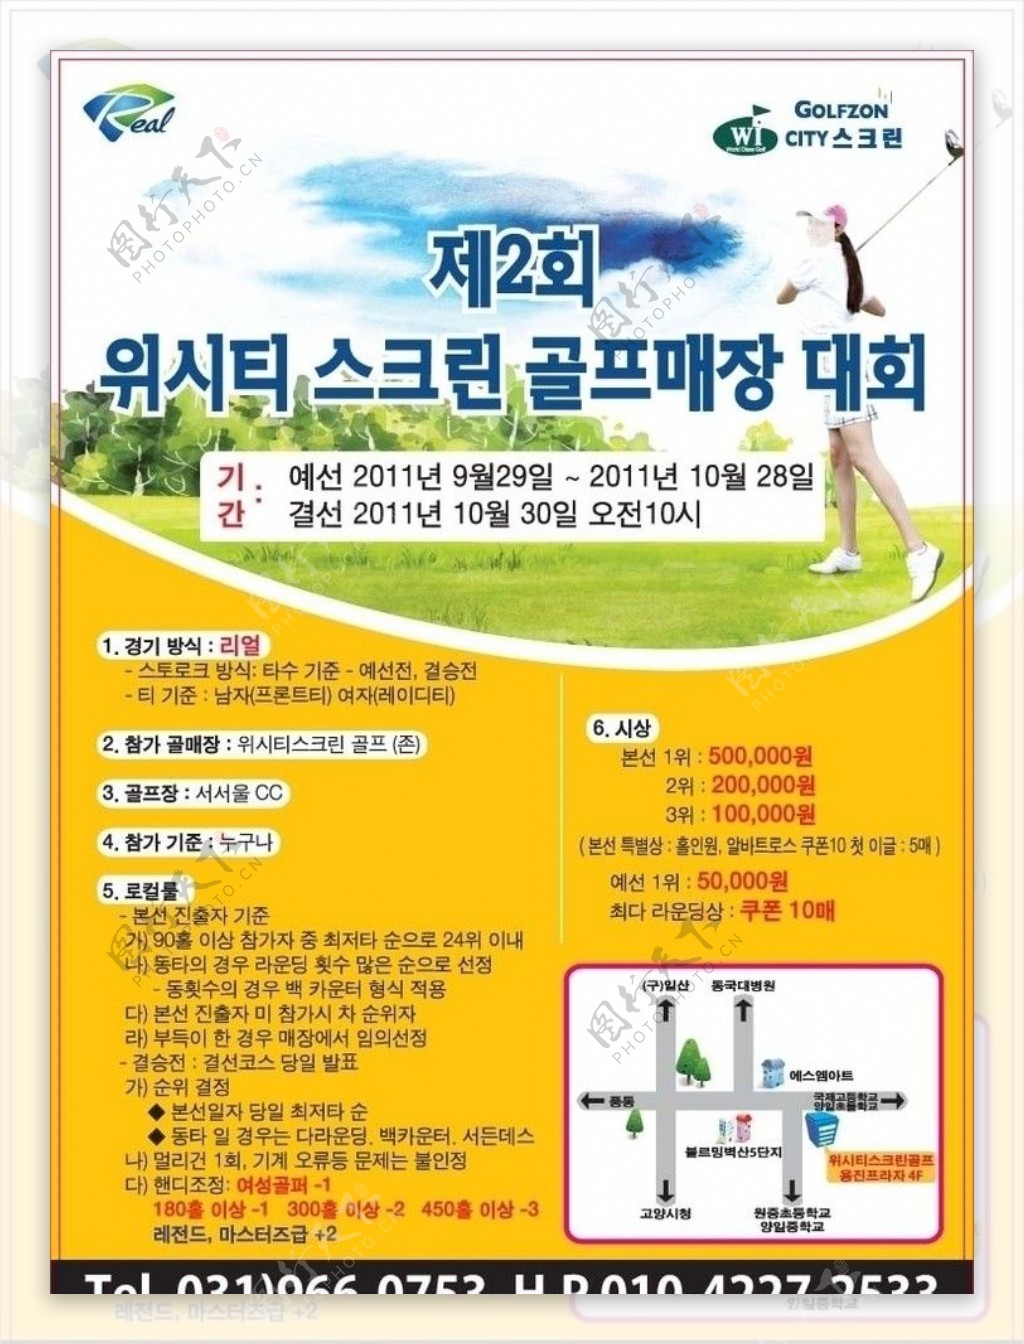 韩国高尔夫传单广告设计图片